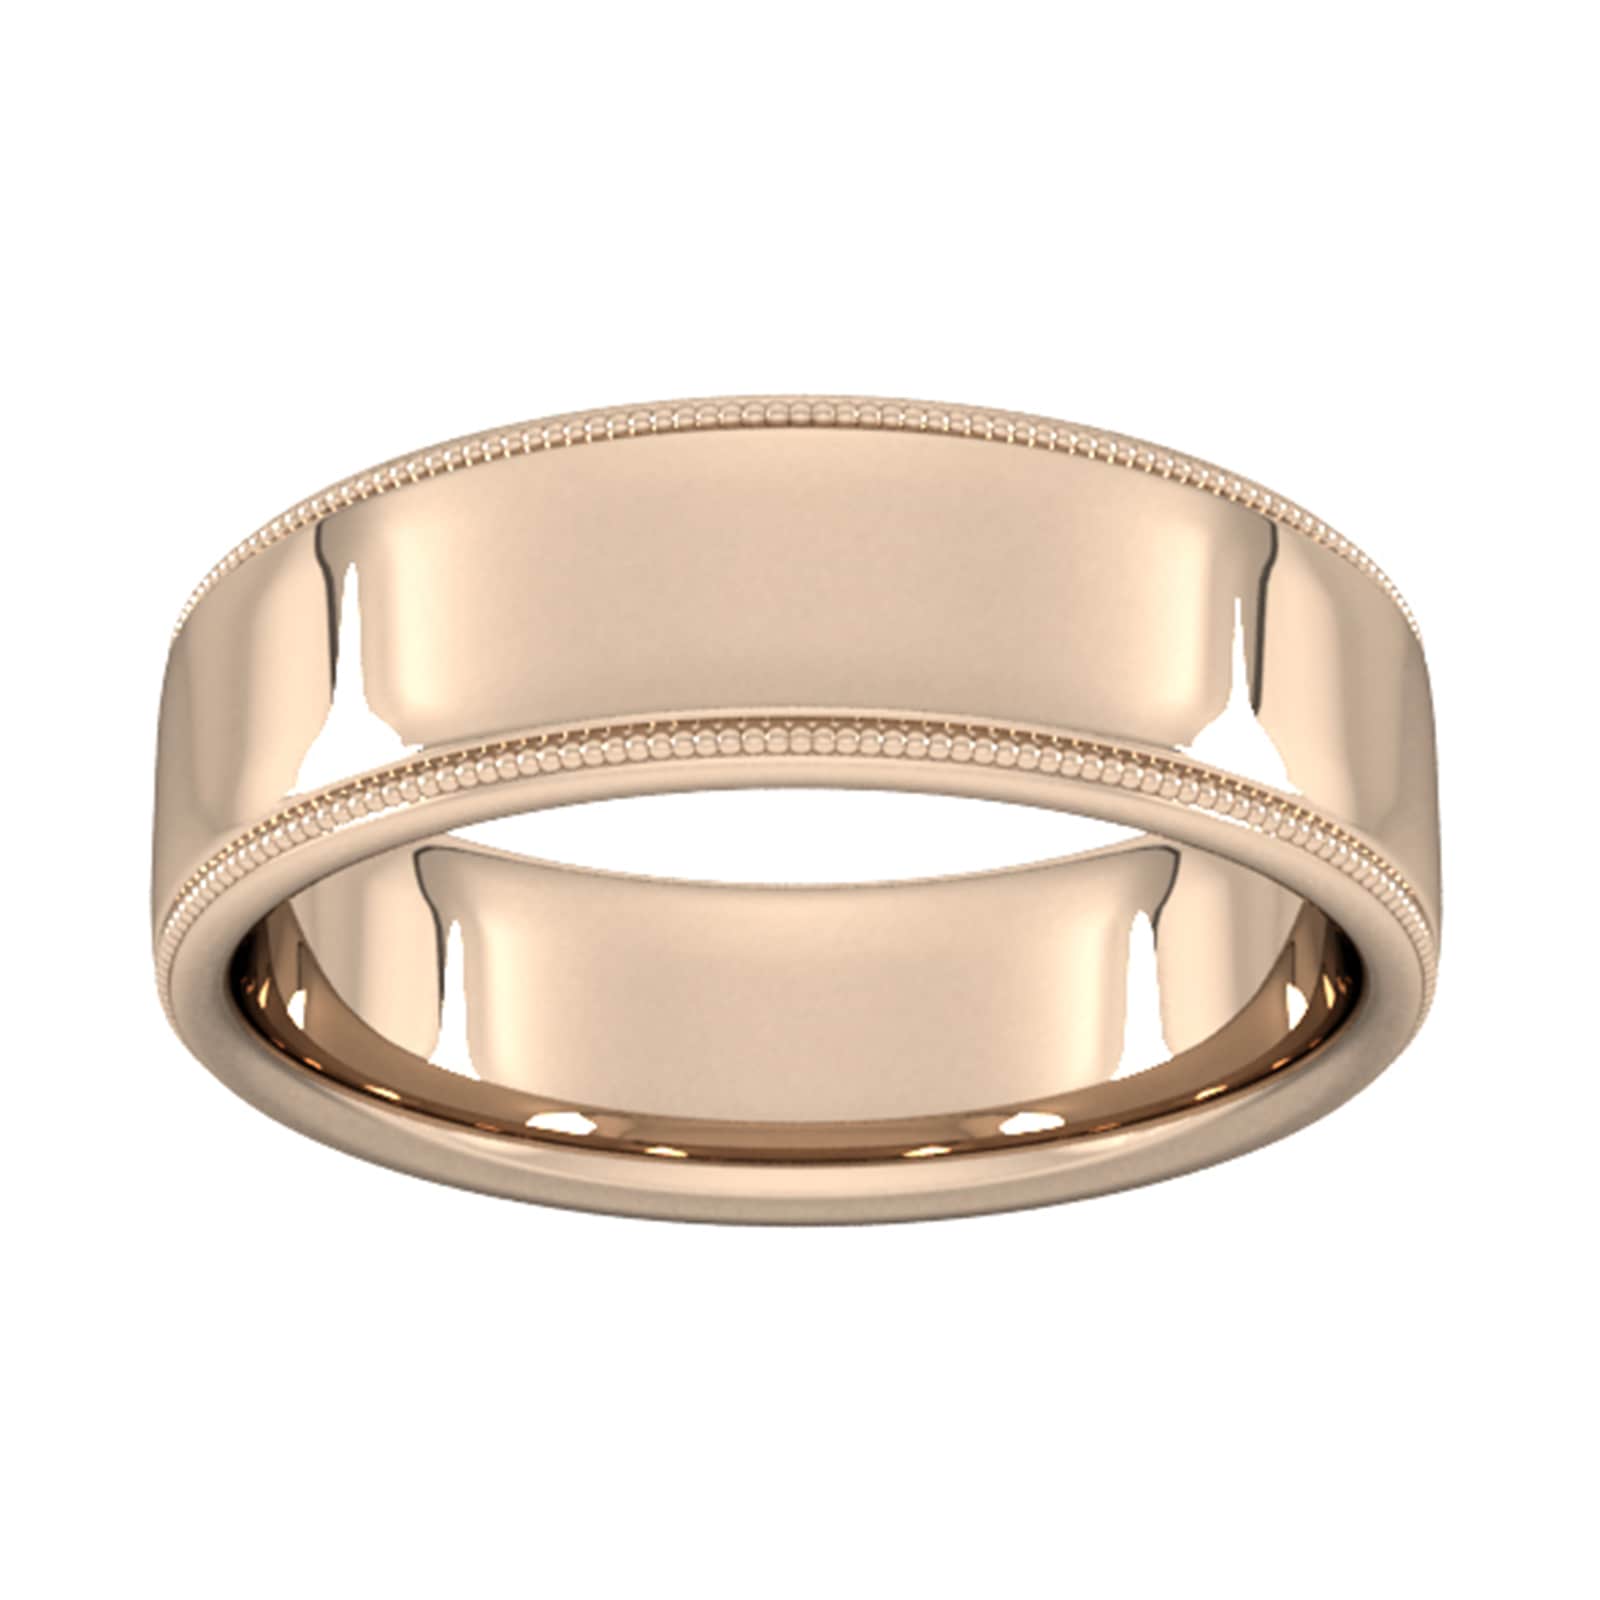 7mm Slight Court Standard Milgrain Edge Wedding Ring In 18 Carat Rose Gold - Ring Size Z